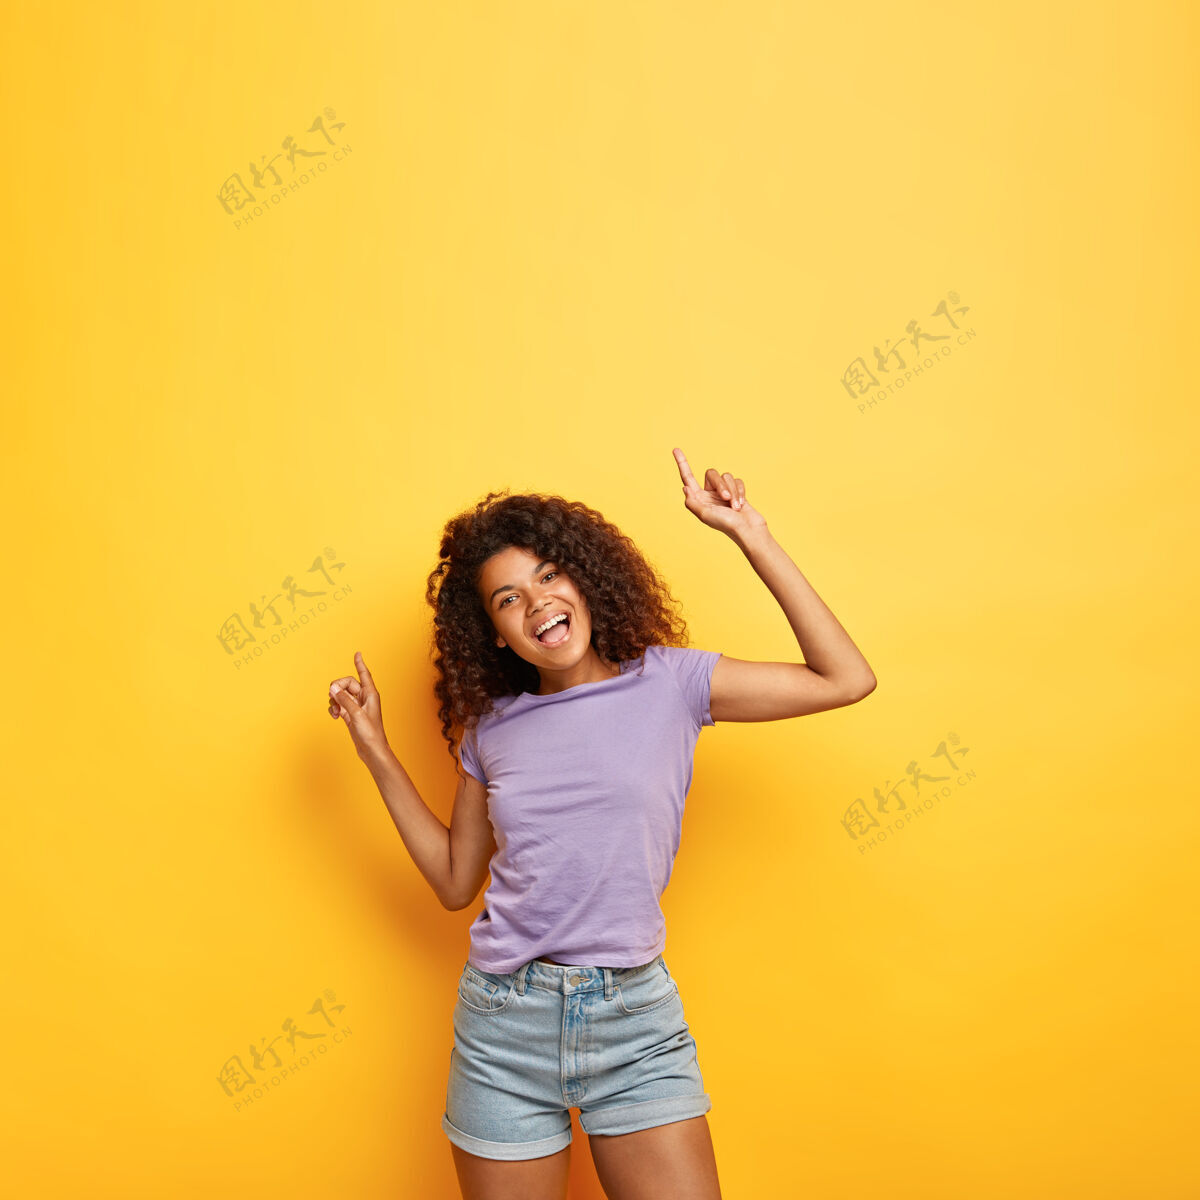 自由空间快乐快乐迷人的黑皮肤女性 卷发 举手投足好听的音乐 身材苗条积极乐观情感